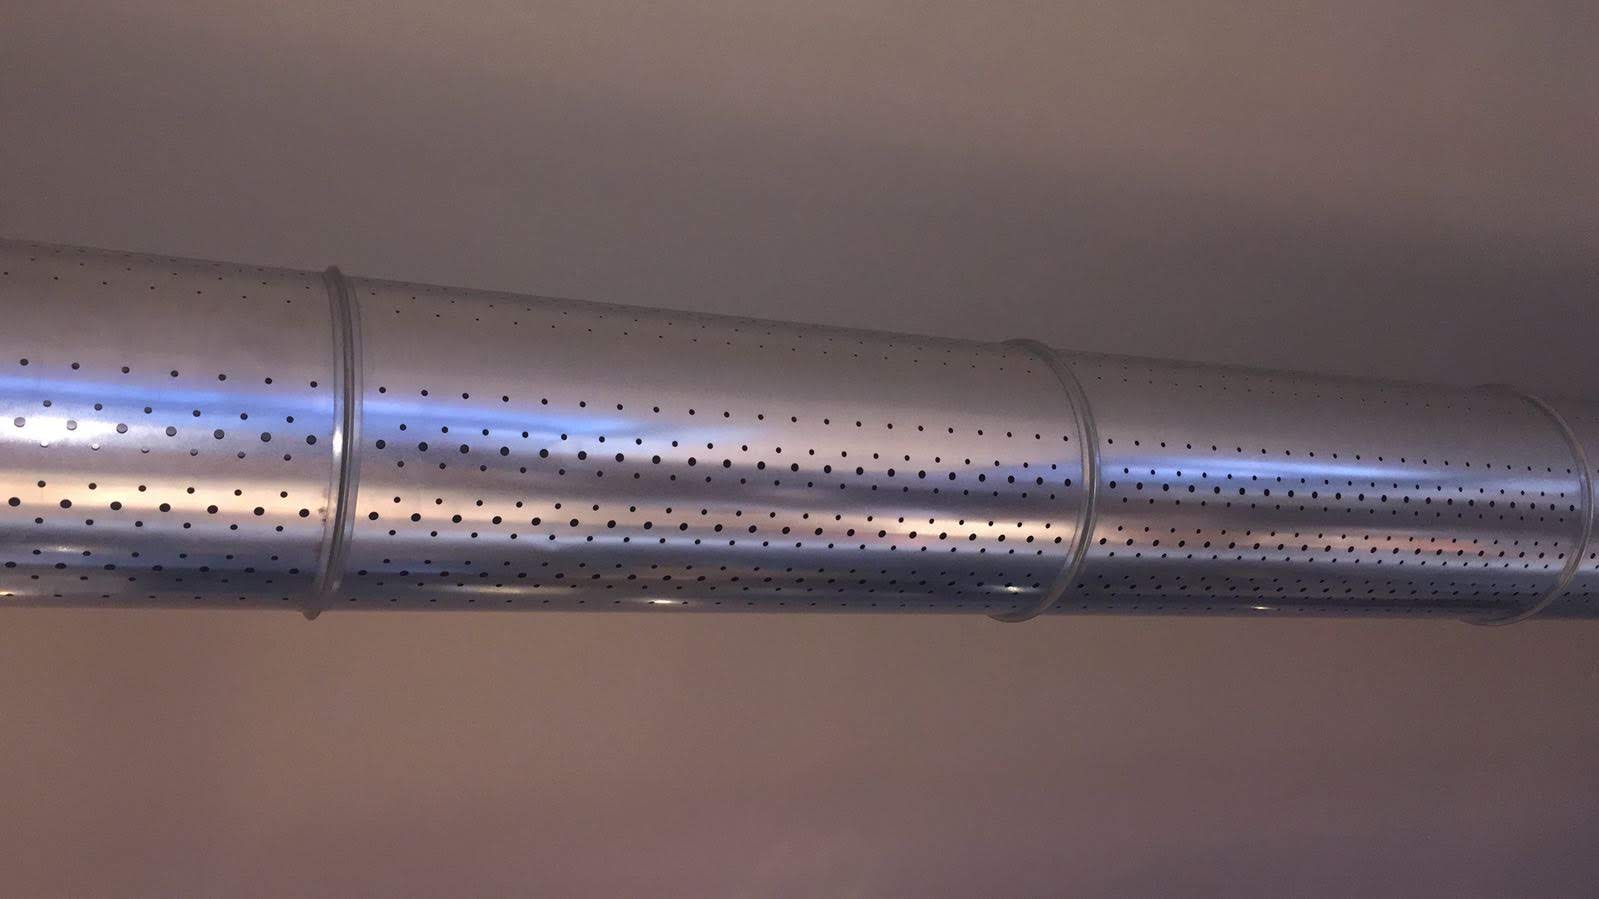 Condotta microforata a sezione circolare in acciaio zincato diametro 300 mm spessore 6/10 lunghezza 1480 mm